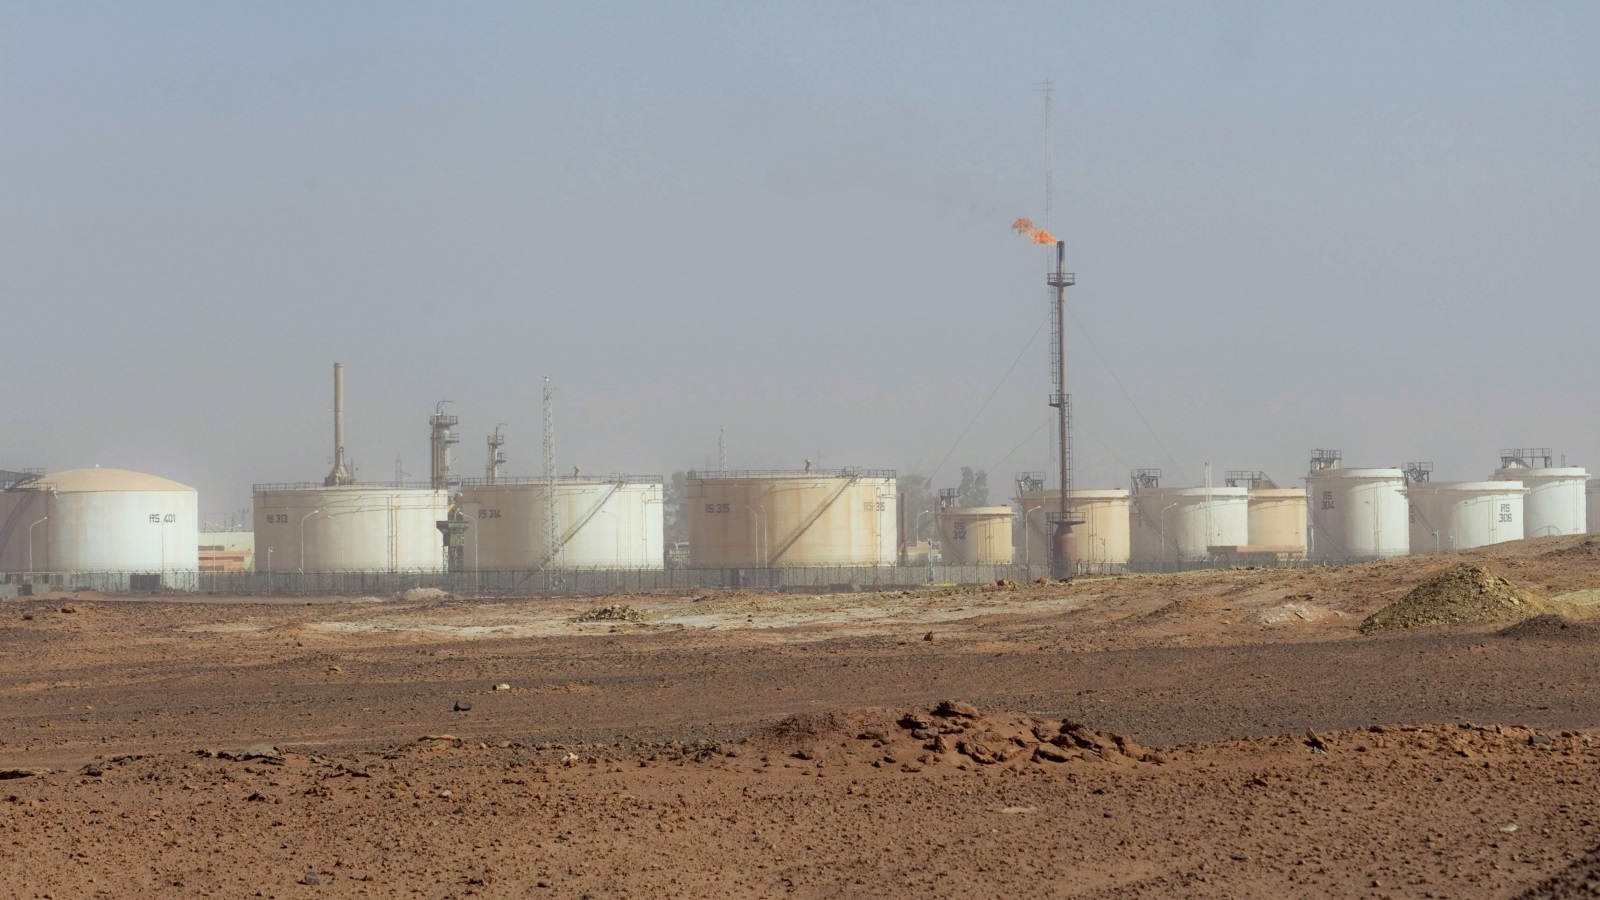 ‪الجزائر تنتج 135 مليار متر مكعب من الغاز سنويا وفقا لأرقام سوناطراك‬ (رويترز)